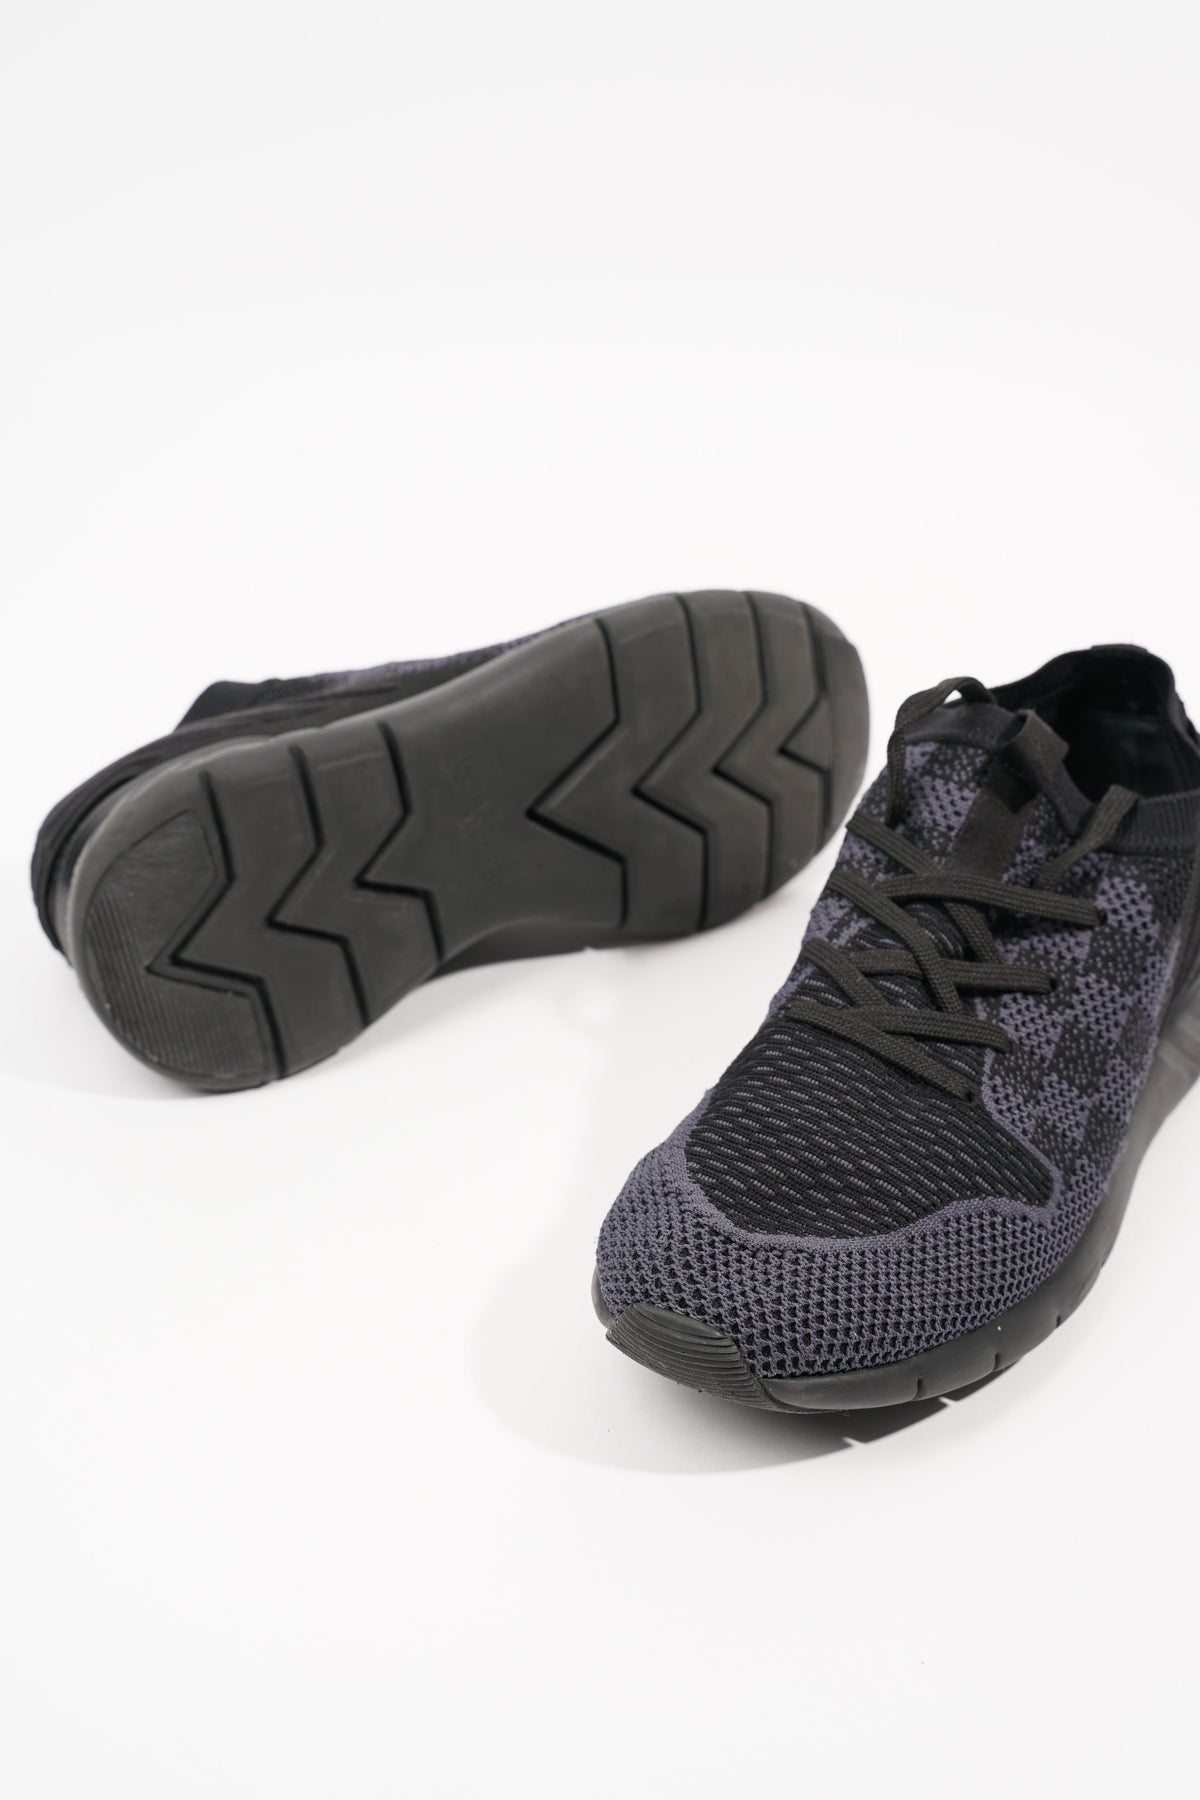 LOUIS VUITTON Fastlane Sneakers Black/Grey